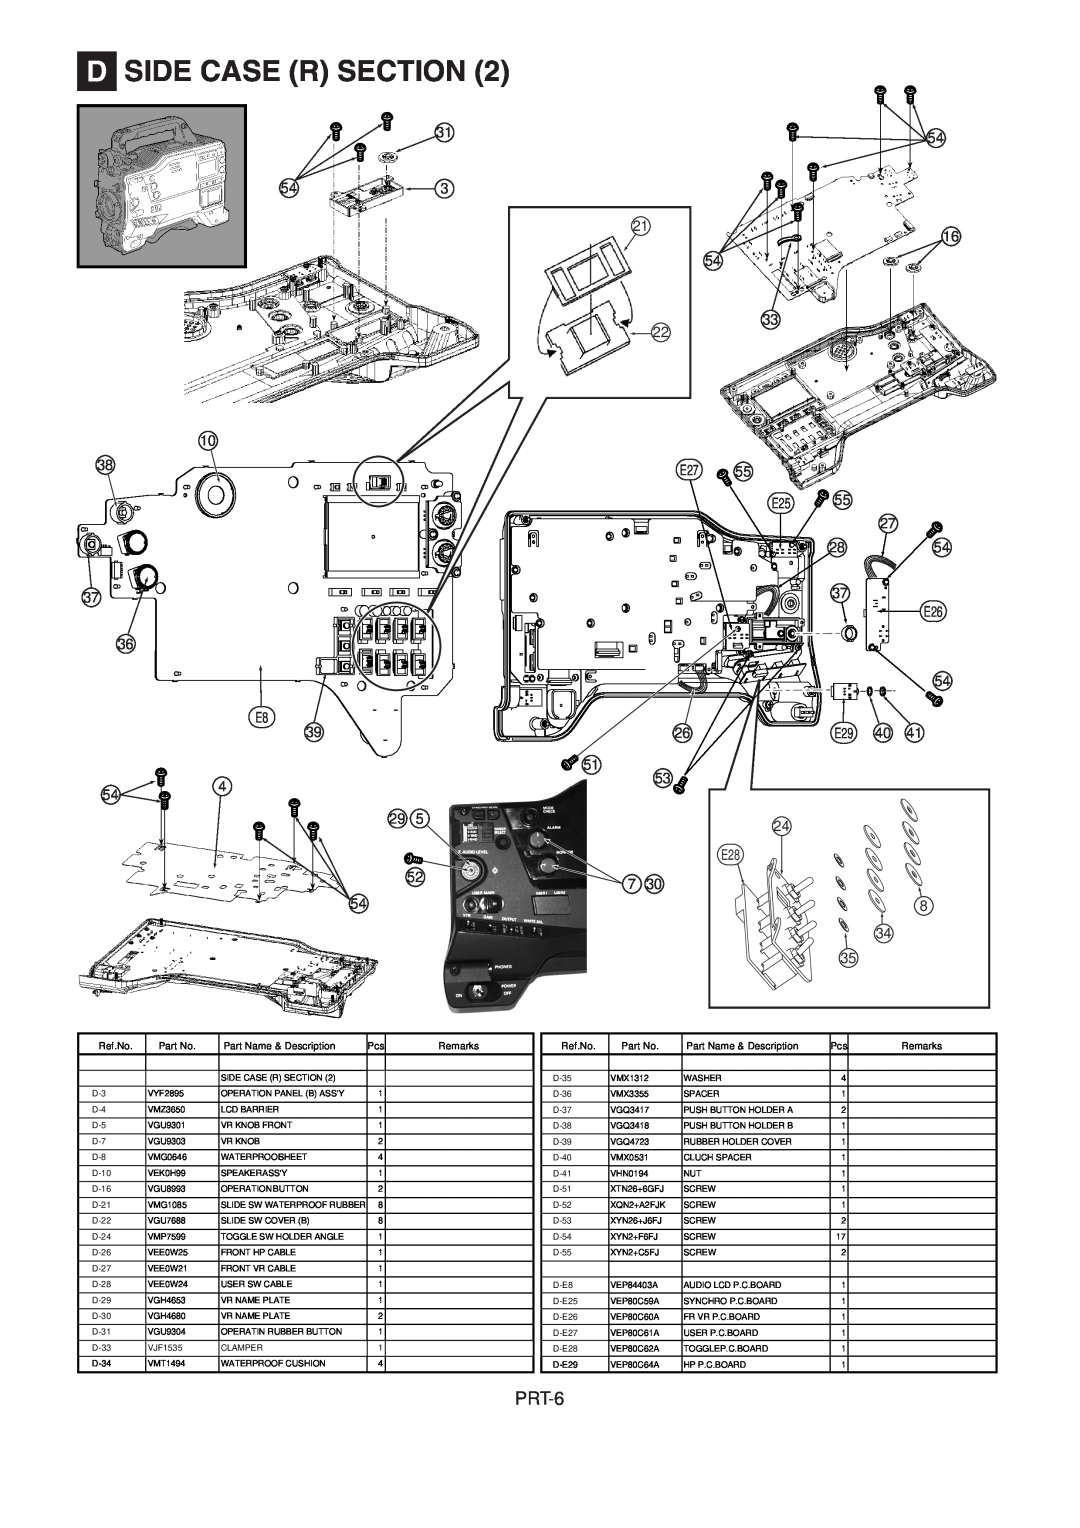 Panasonic AJ-HDX900MC manual PRT-6, D Side Case R Section, Ref.No, Part Name & Description, Remarks 